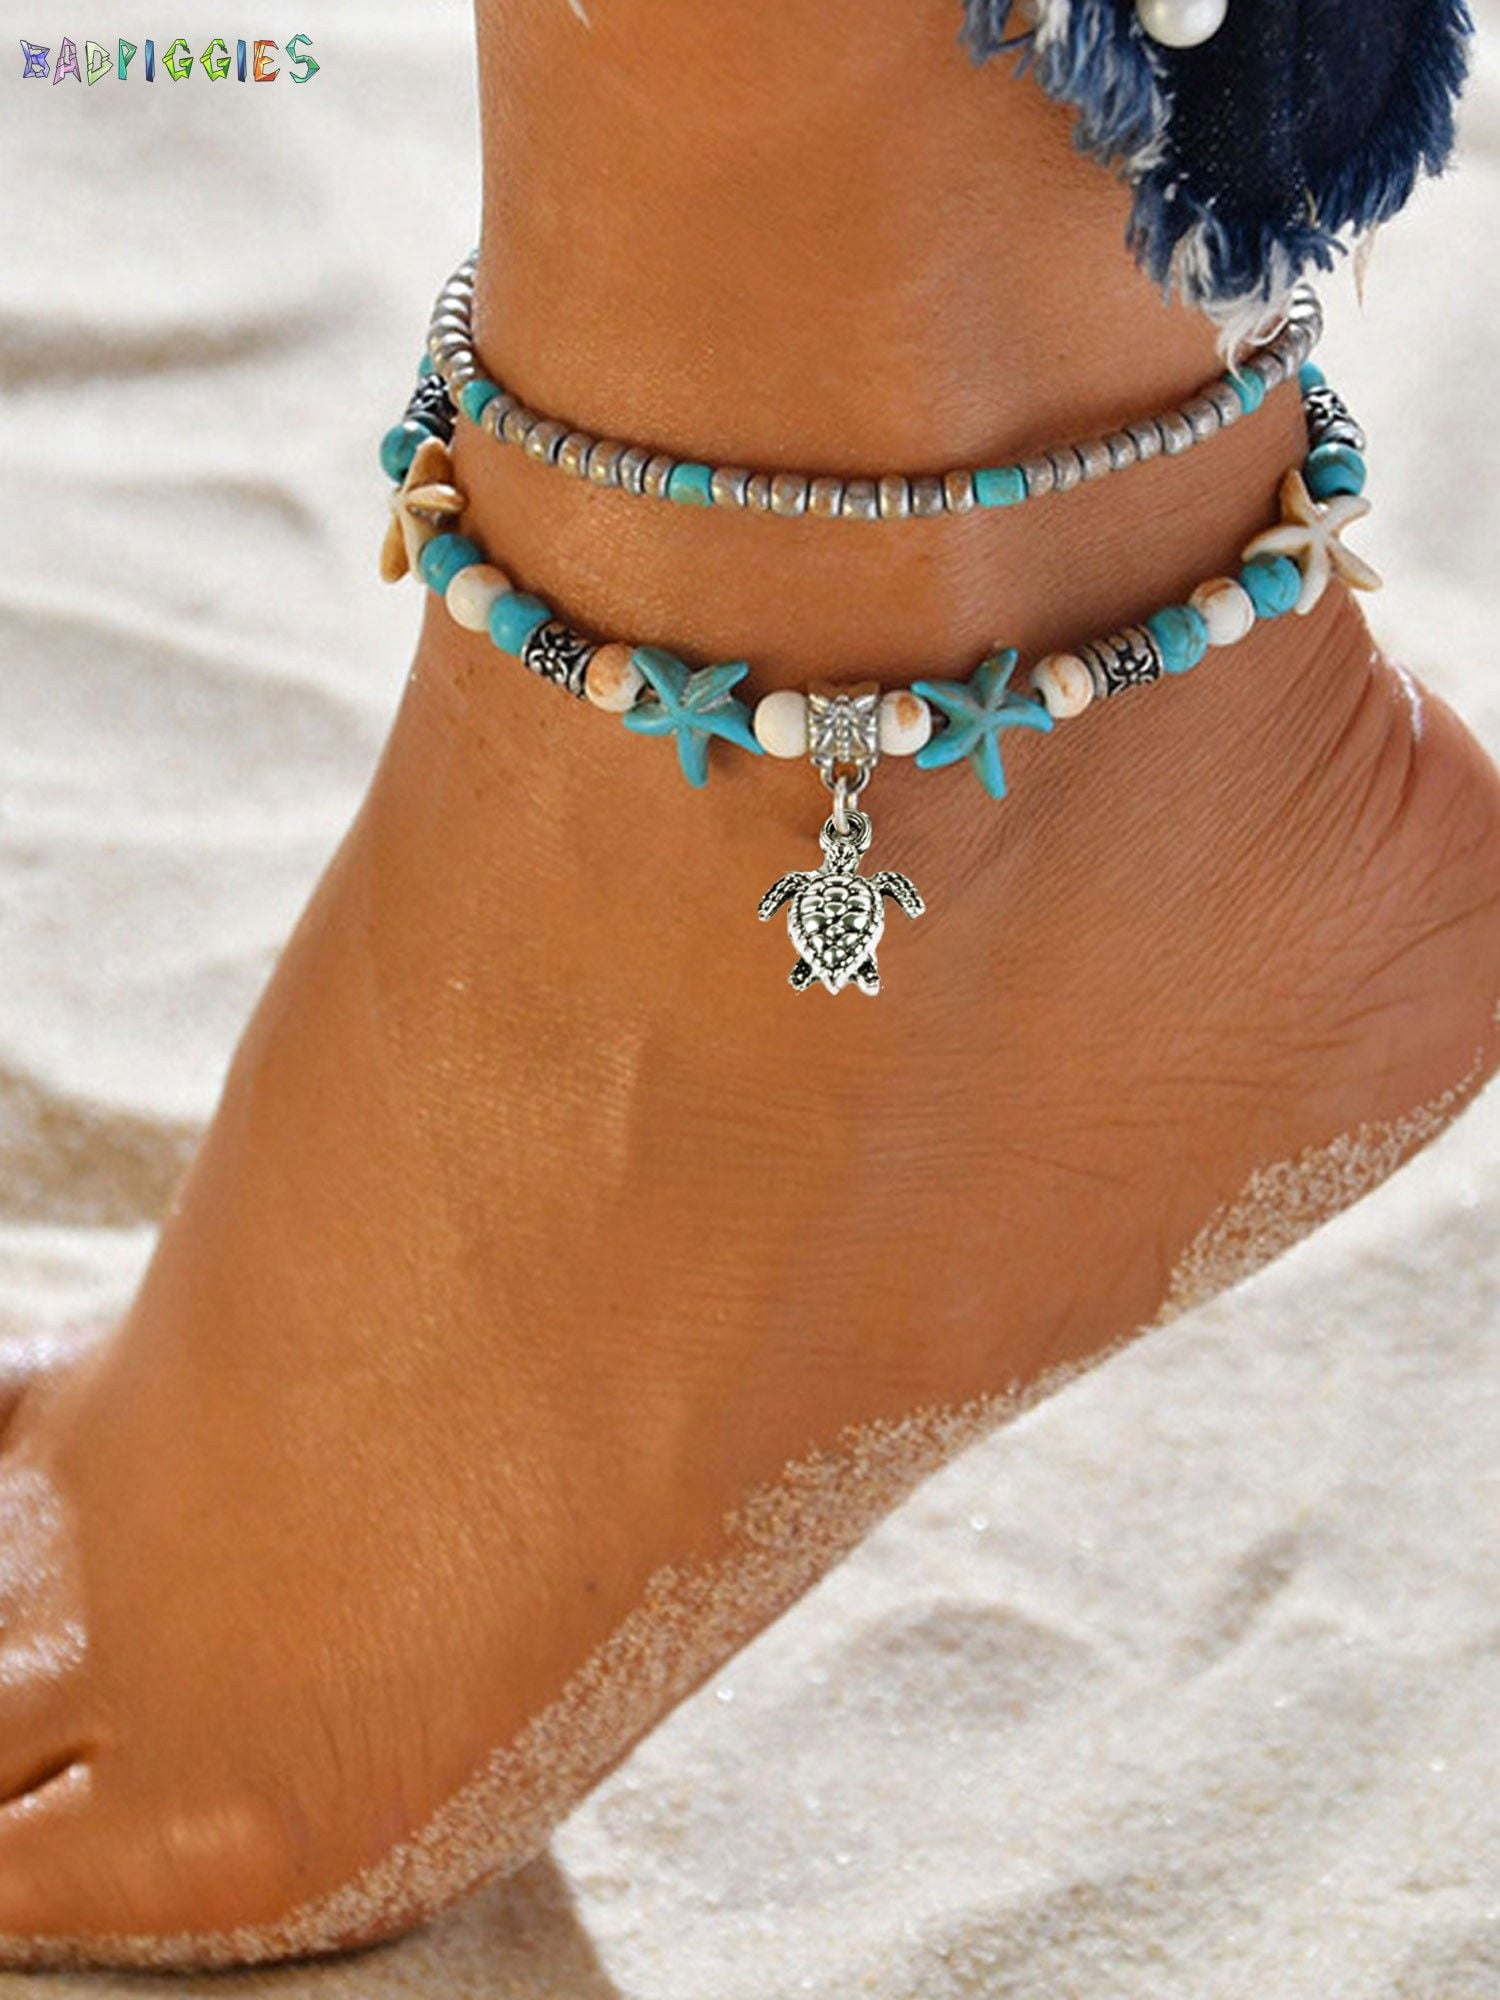 Aukmla Sea Turtle Beach Anklets Foot Chain Barefoot Sandal Ankle Bracelet Adjustable